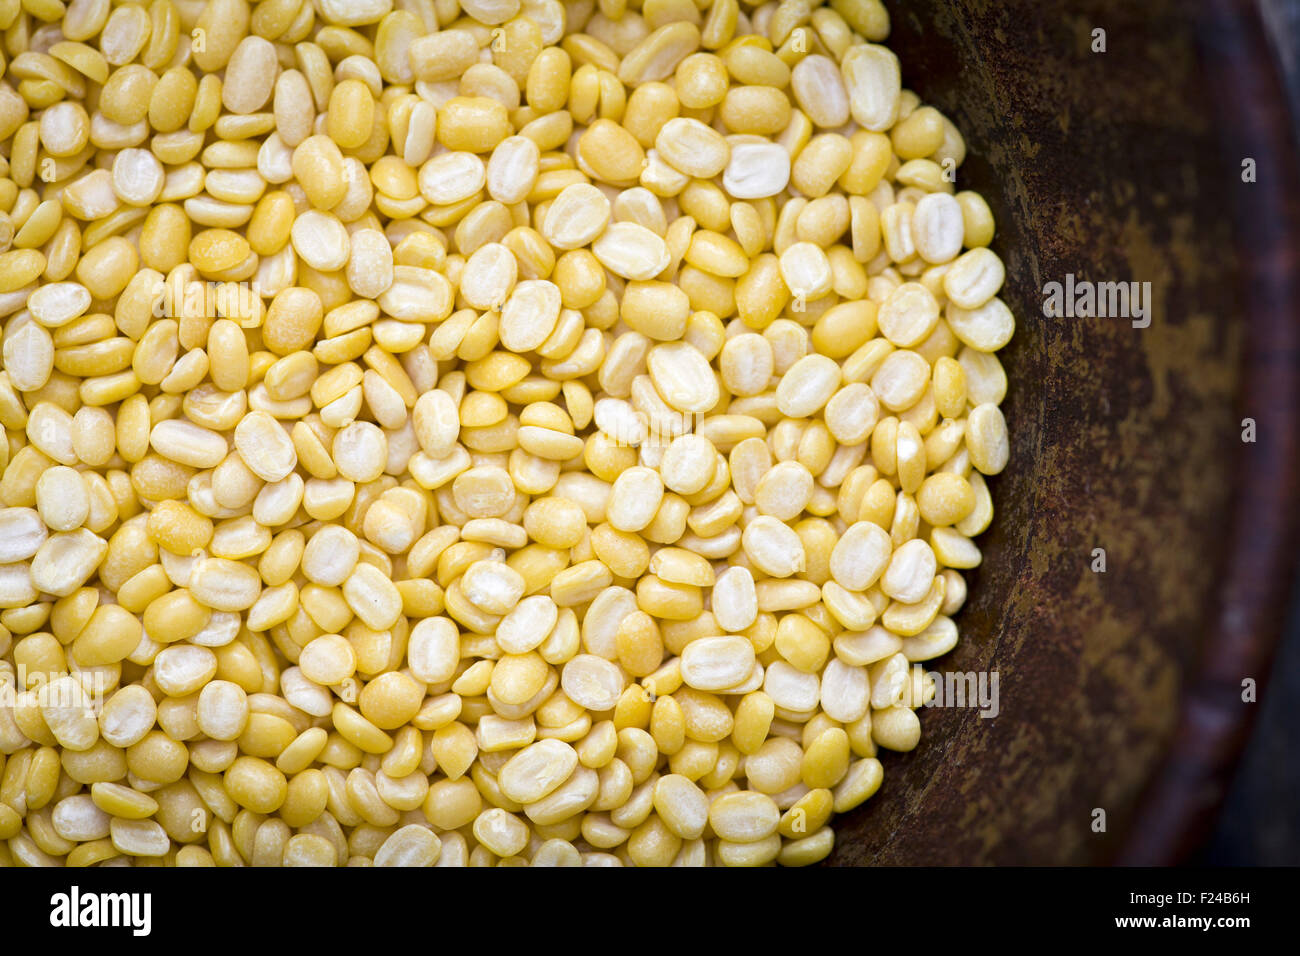 Yellow lentils Stock Photo